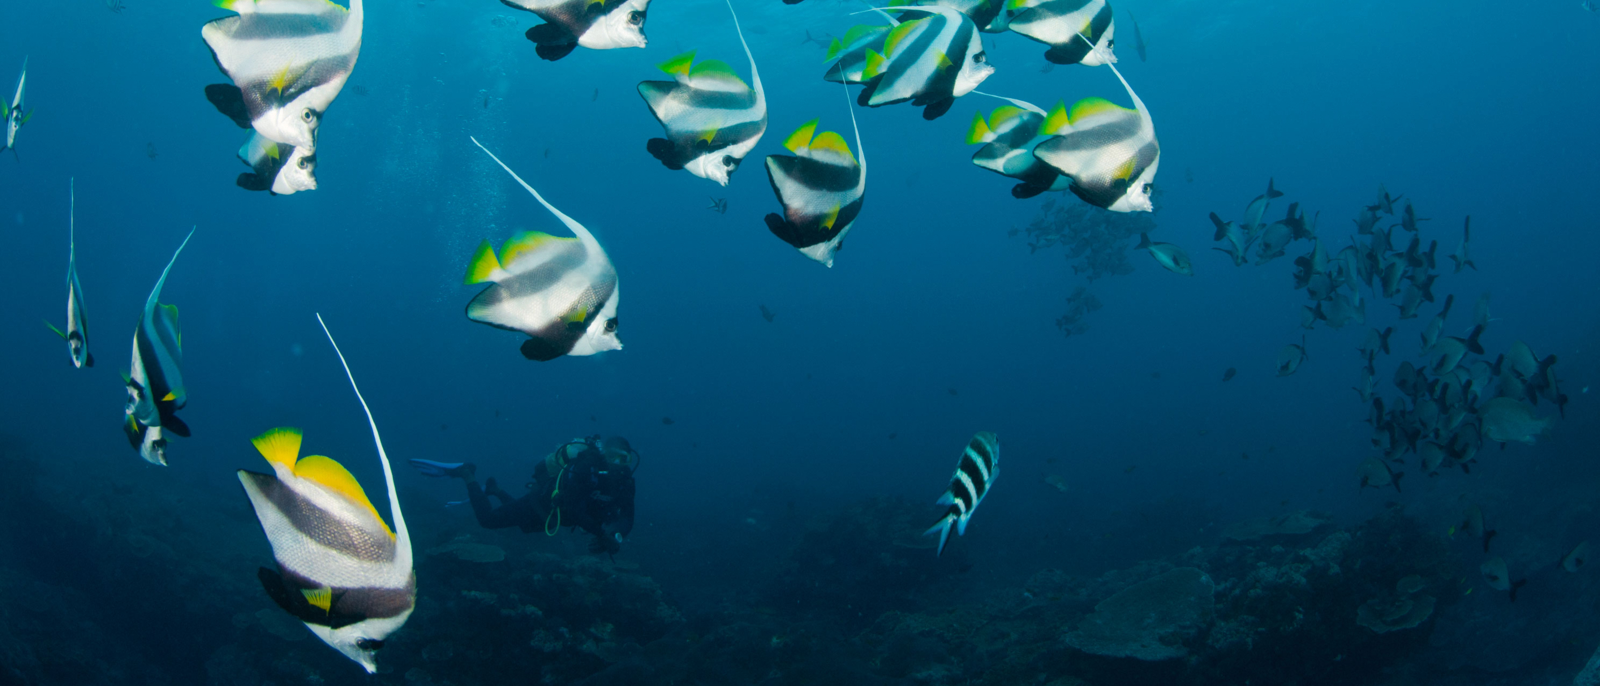 A school of longfin banner fish in an open blue ocean